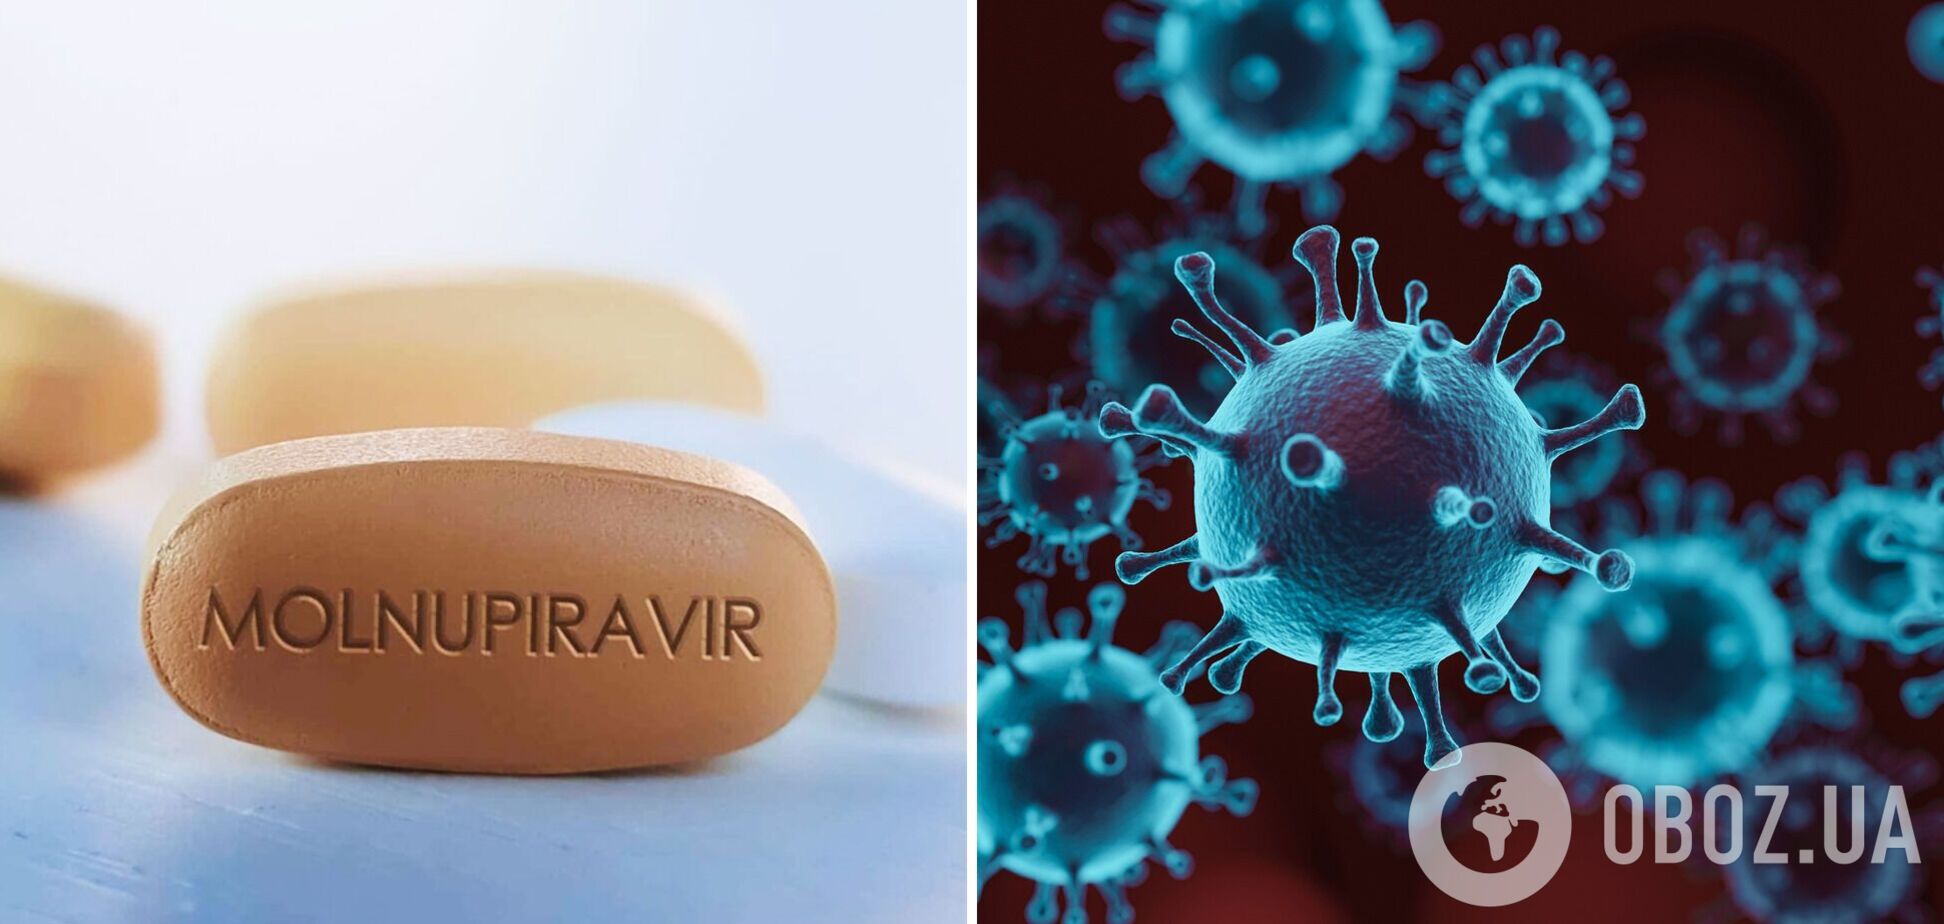 В Україну доставили партію препарату 'Молнупіравір', який використовуватимуть для лікування COVID-19